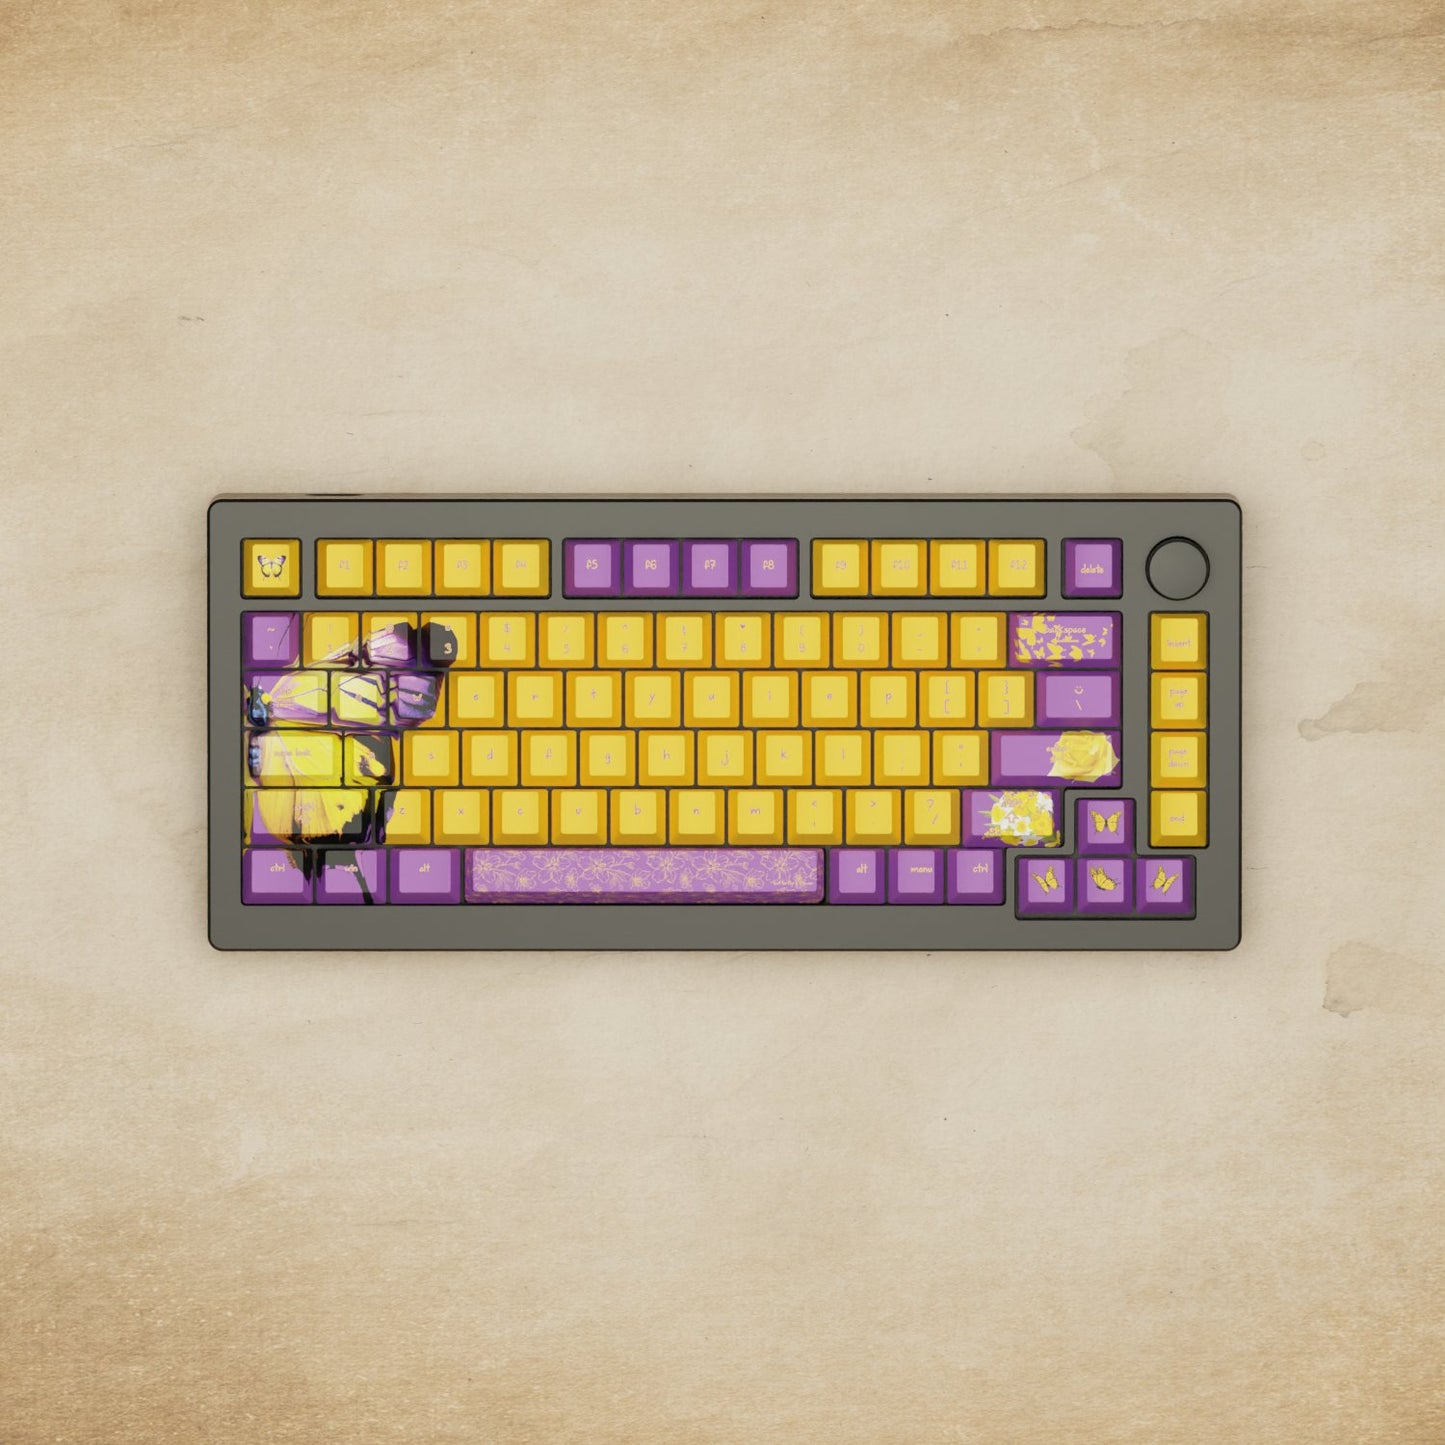 Monsgeek M1W - 75% Butterfly Mechanical Keyboard - Goblintechkeys